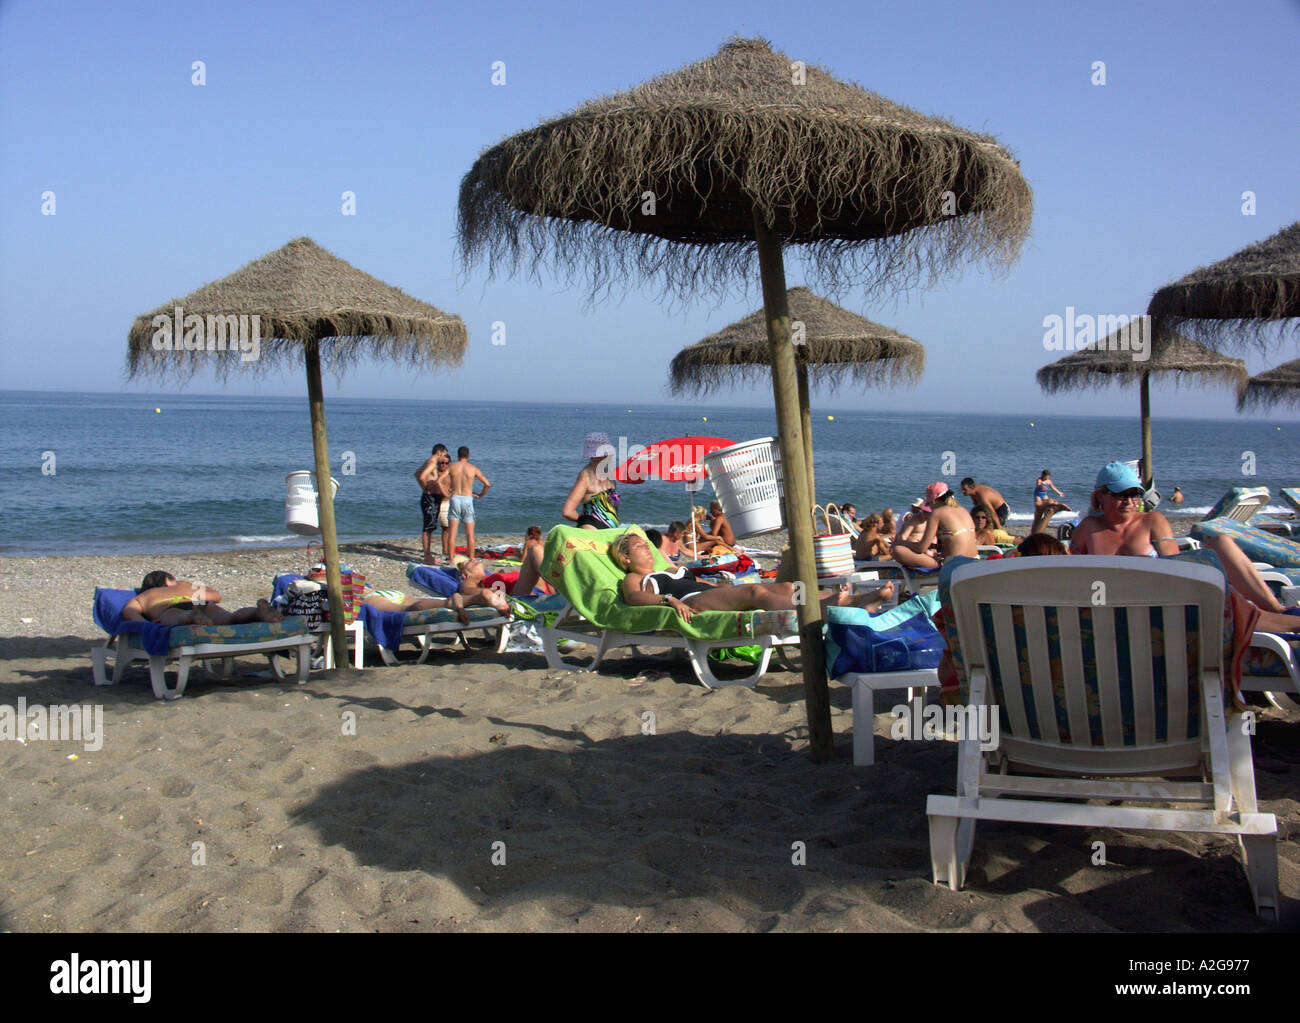 Summer Fun on the Beach Bikini Beach Chiringuito Playa de Castillo, Fuengirola, Costa del Sol, Spain Stock Photo pic